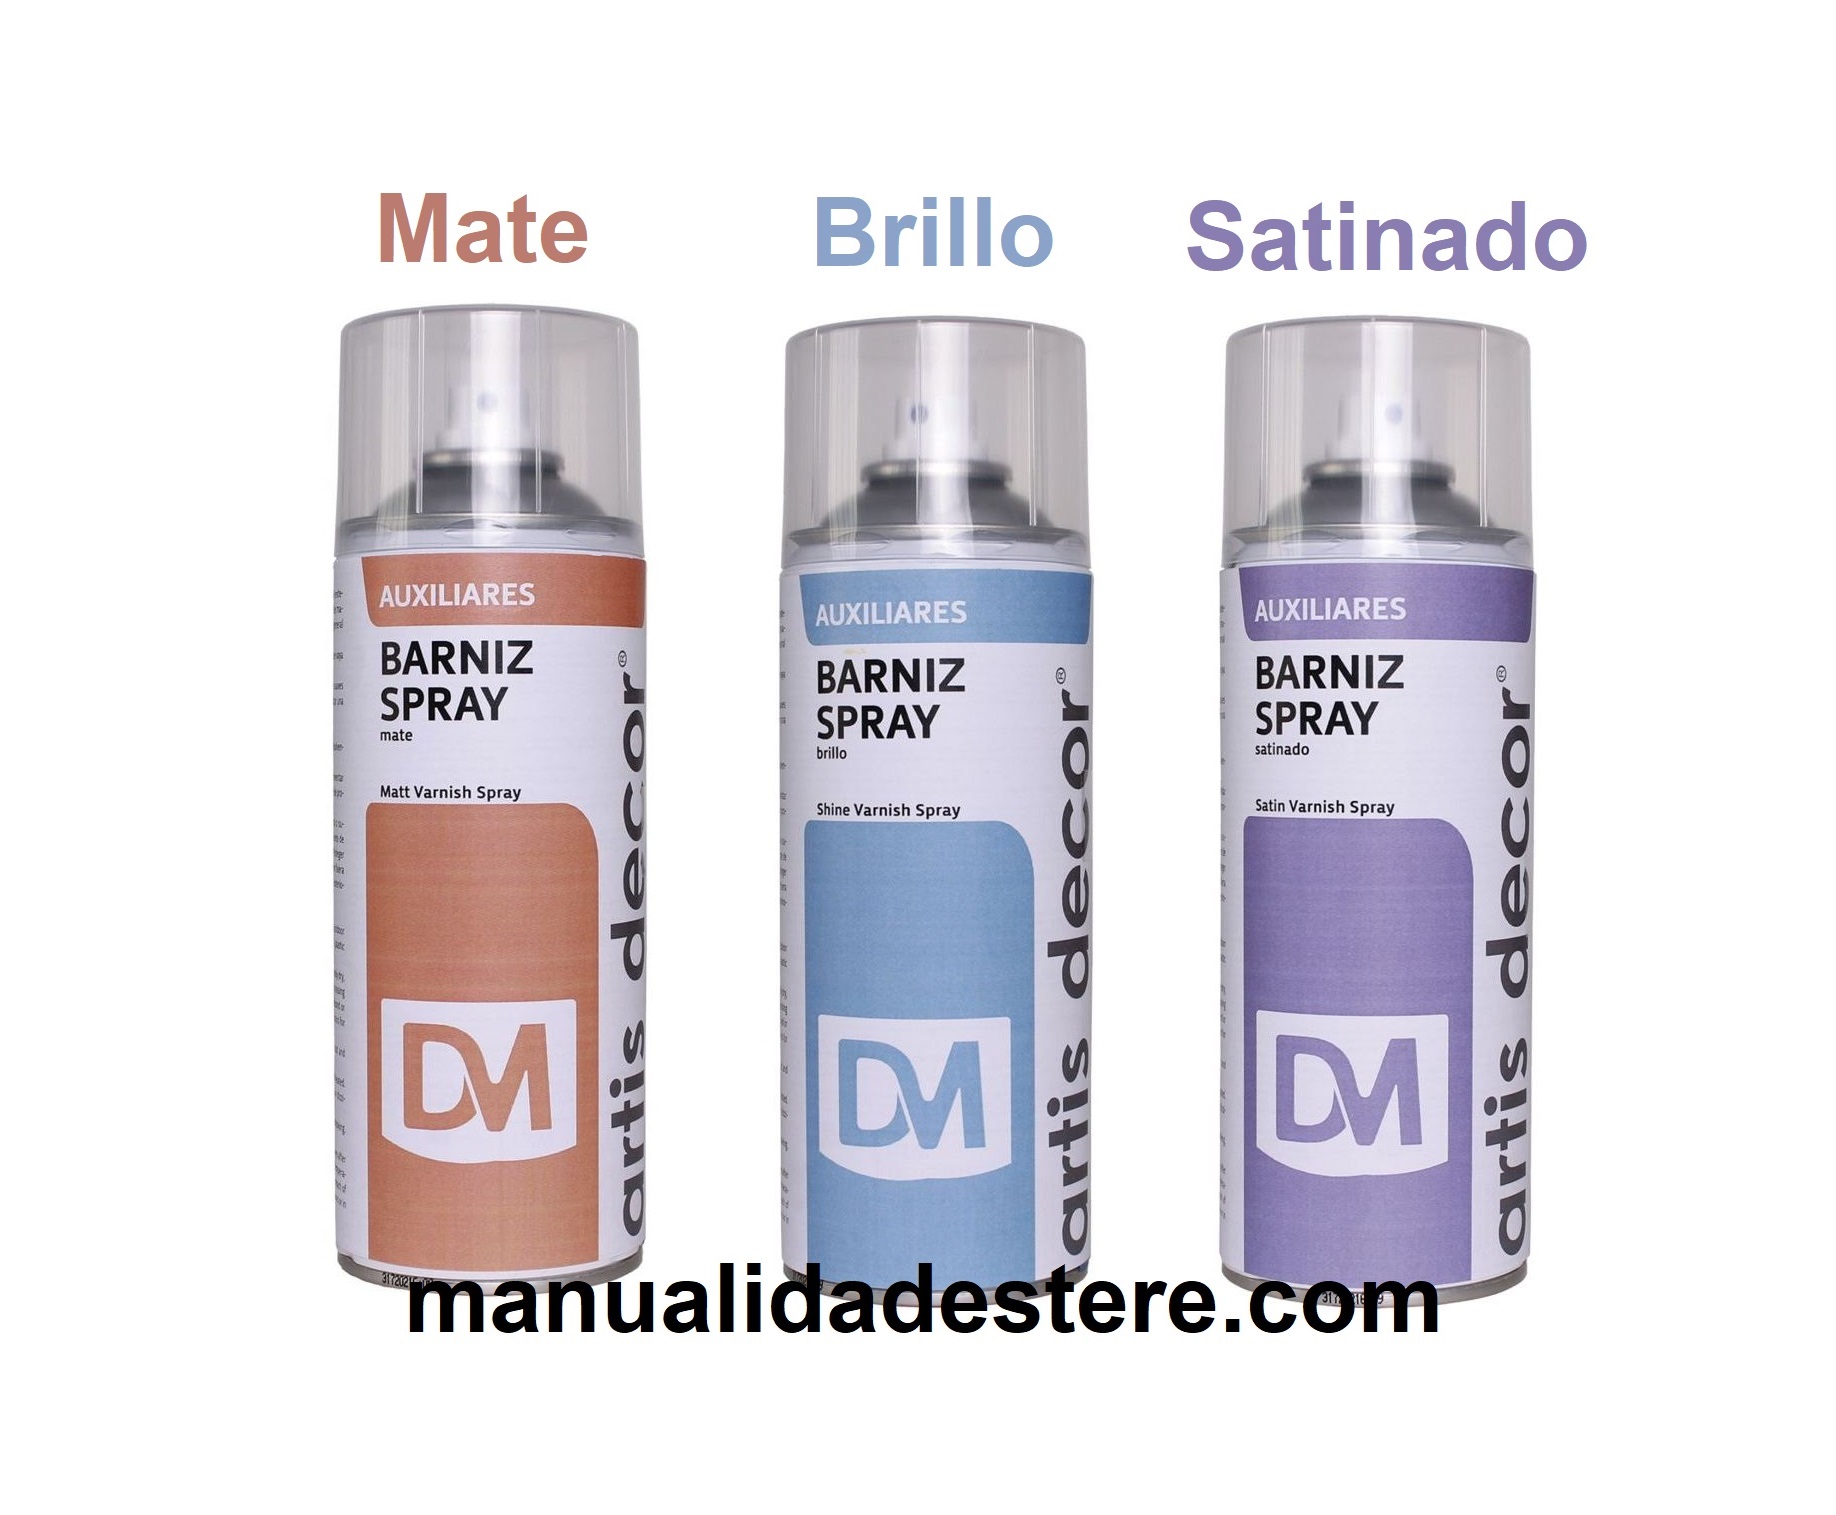 https://manualidadestere.com/wp-content/uploads/2014/07/baniz-en-spray-para-manualidades-artis-decor.jpg